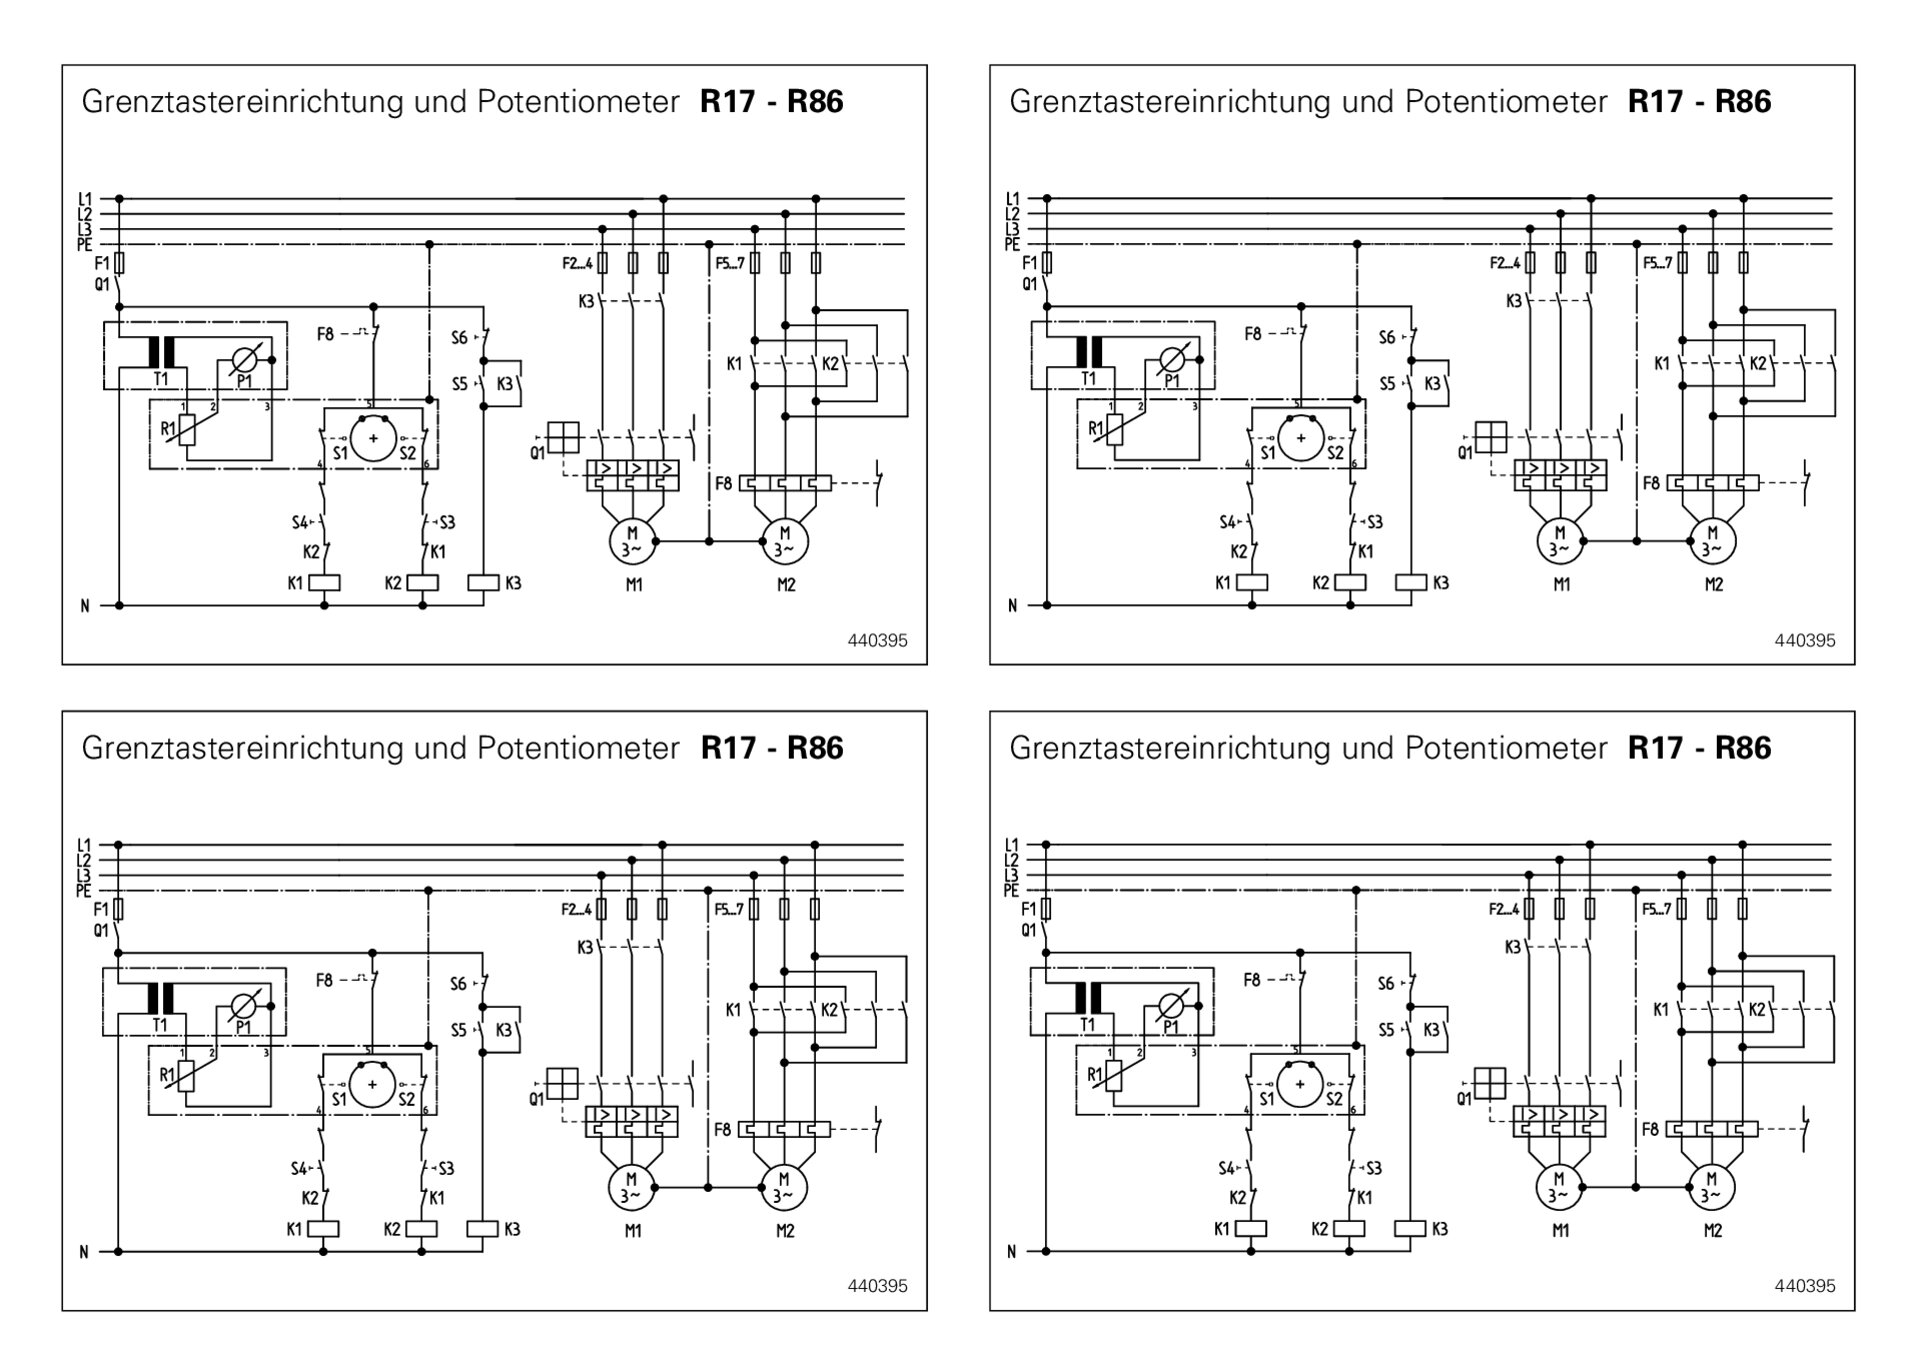 Inbetriebnahmeanleitung Grenztastereinrichtung und Potentiometer R17-R86